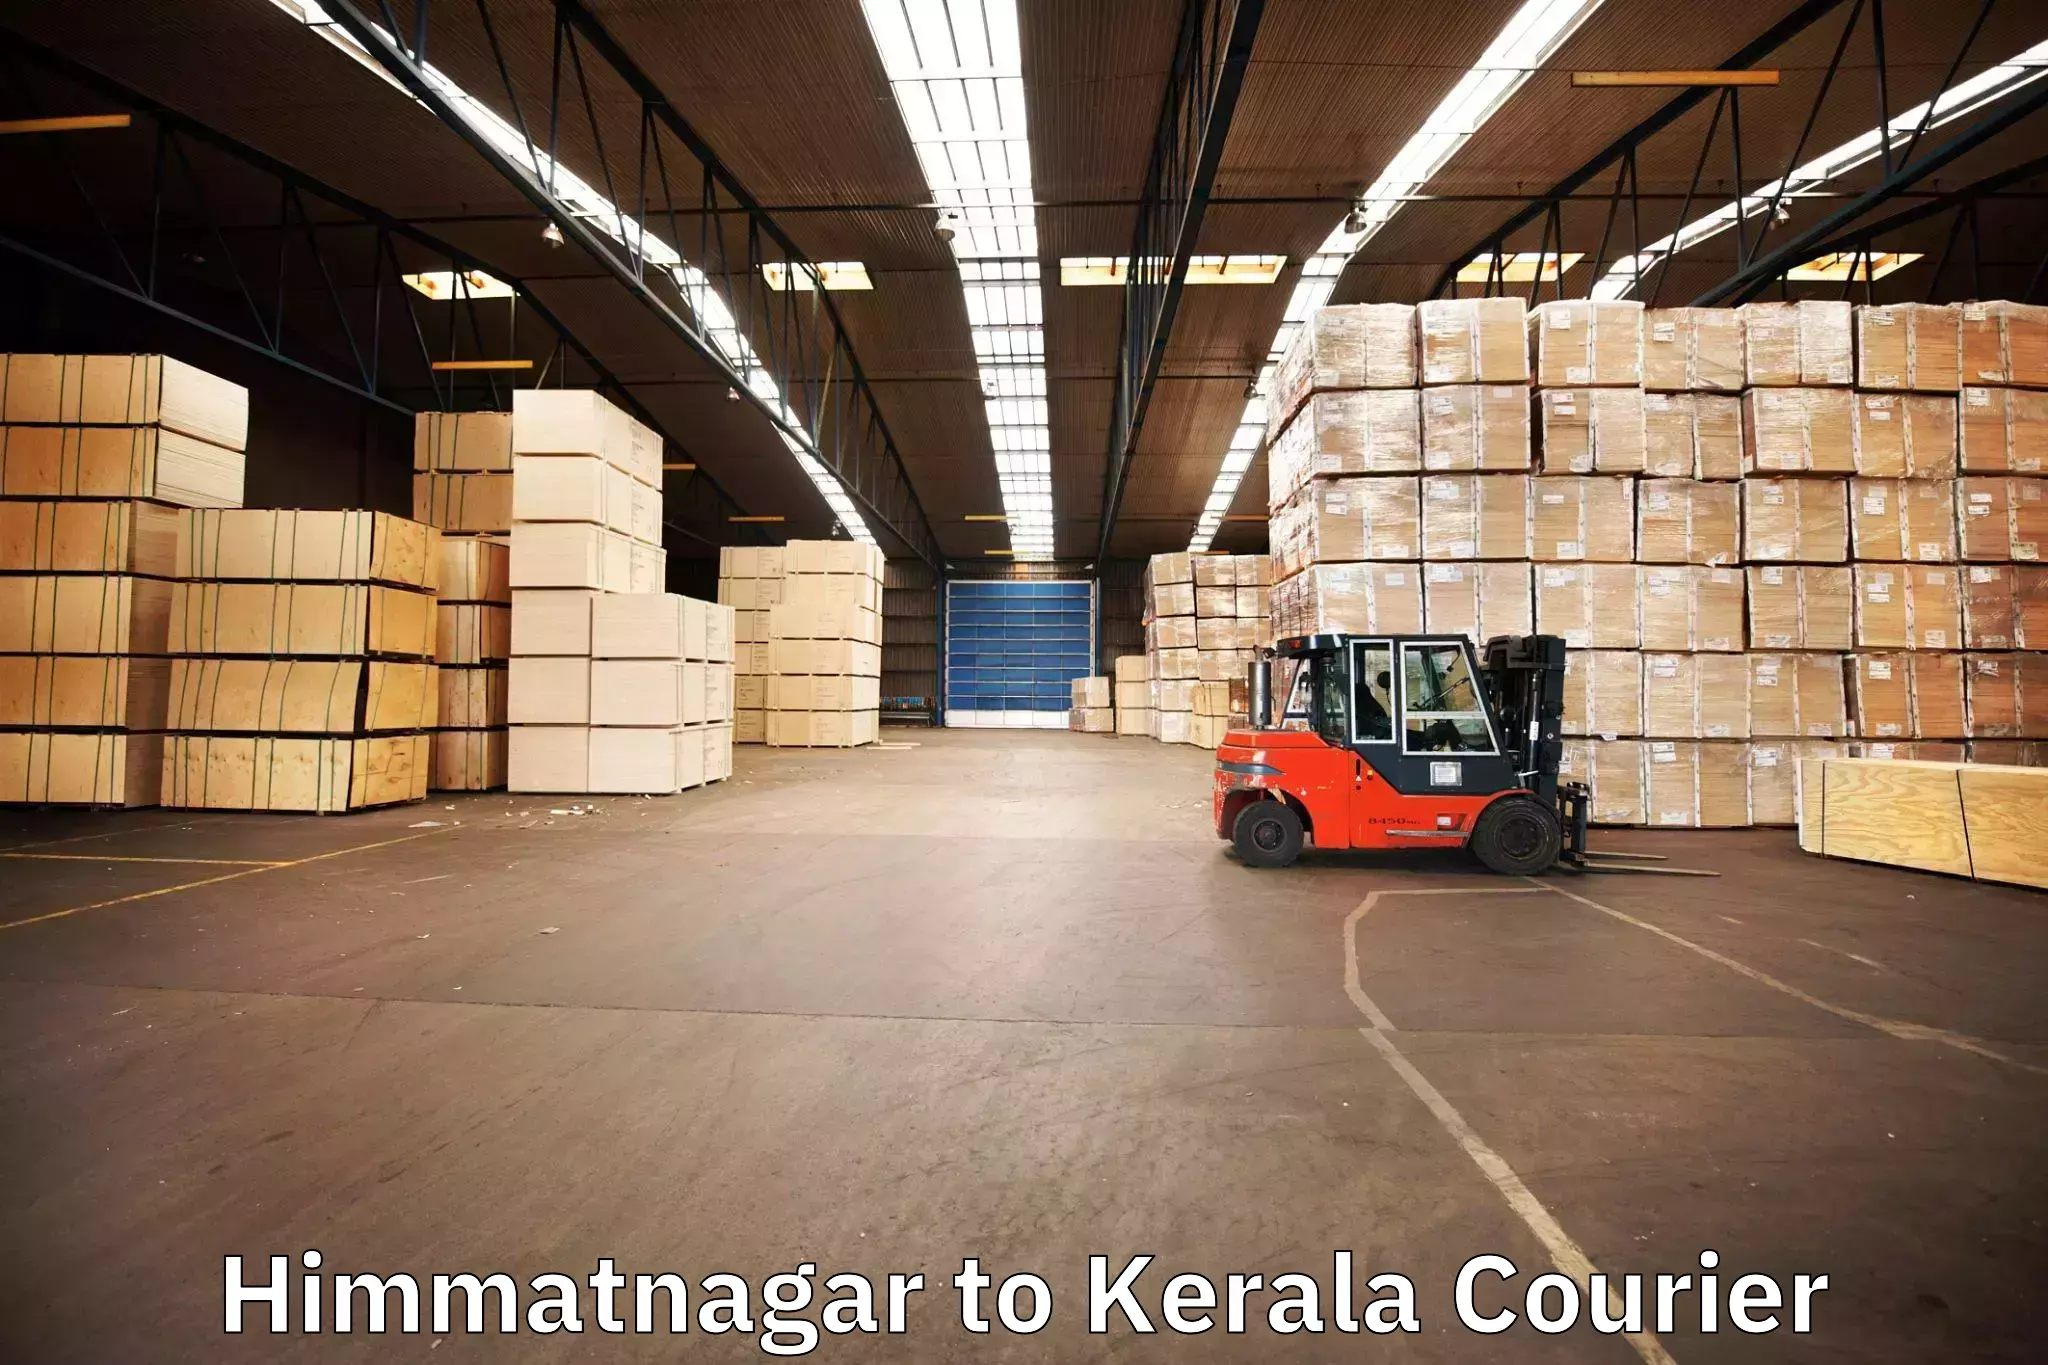 Full-service movers Himmatnagar to Kochi